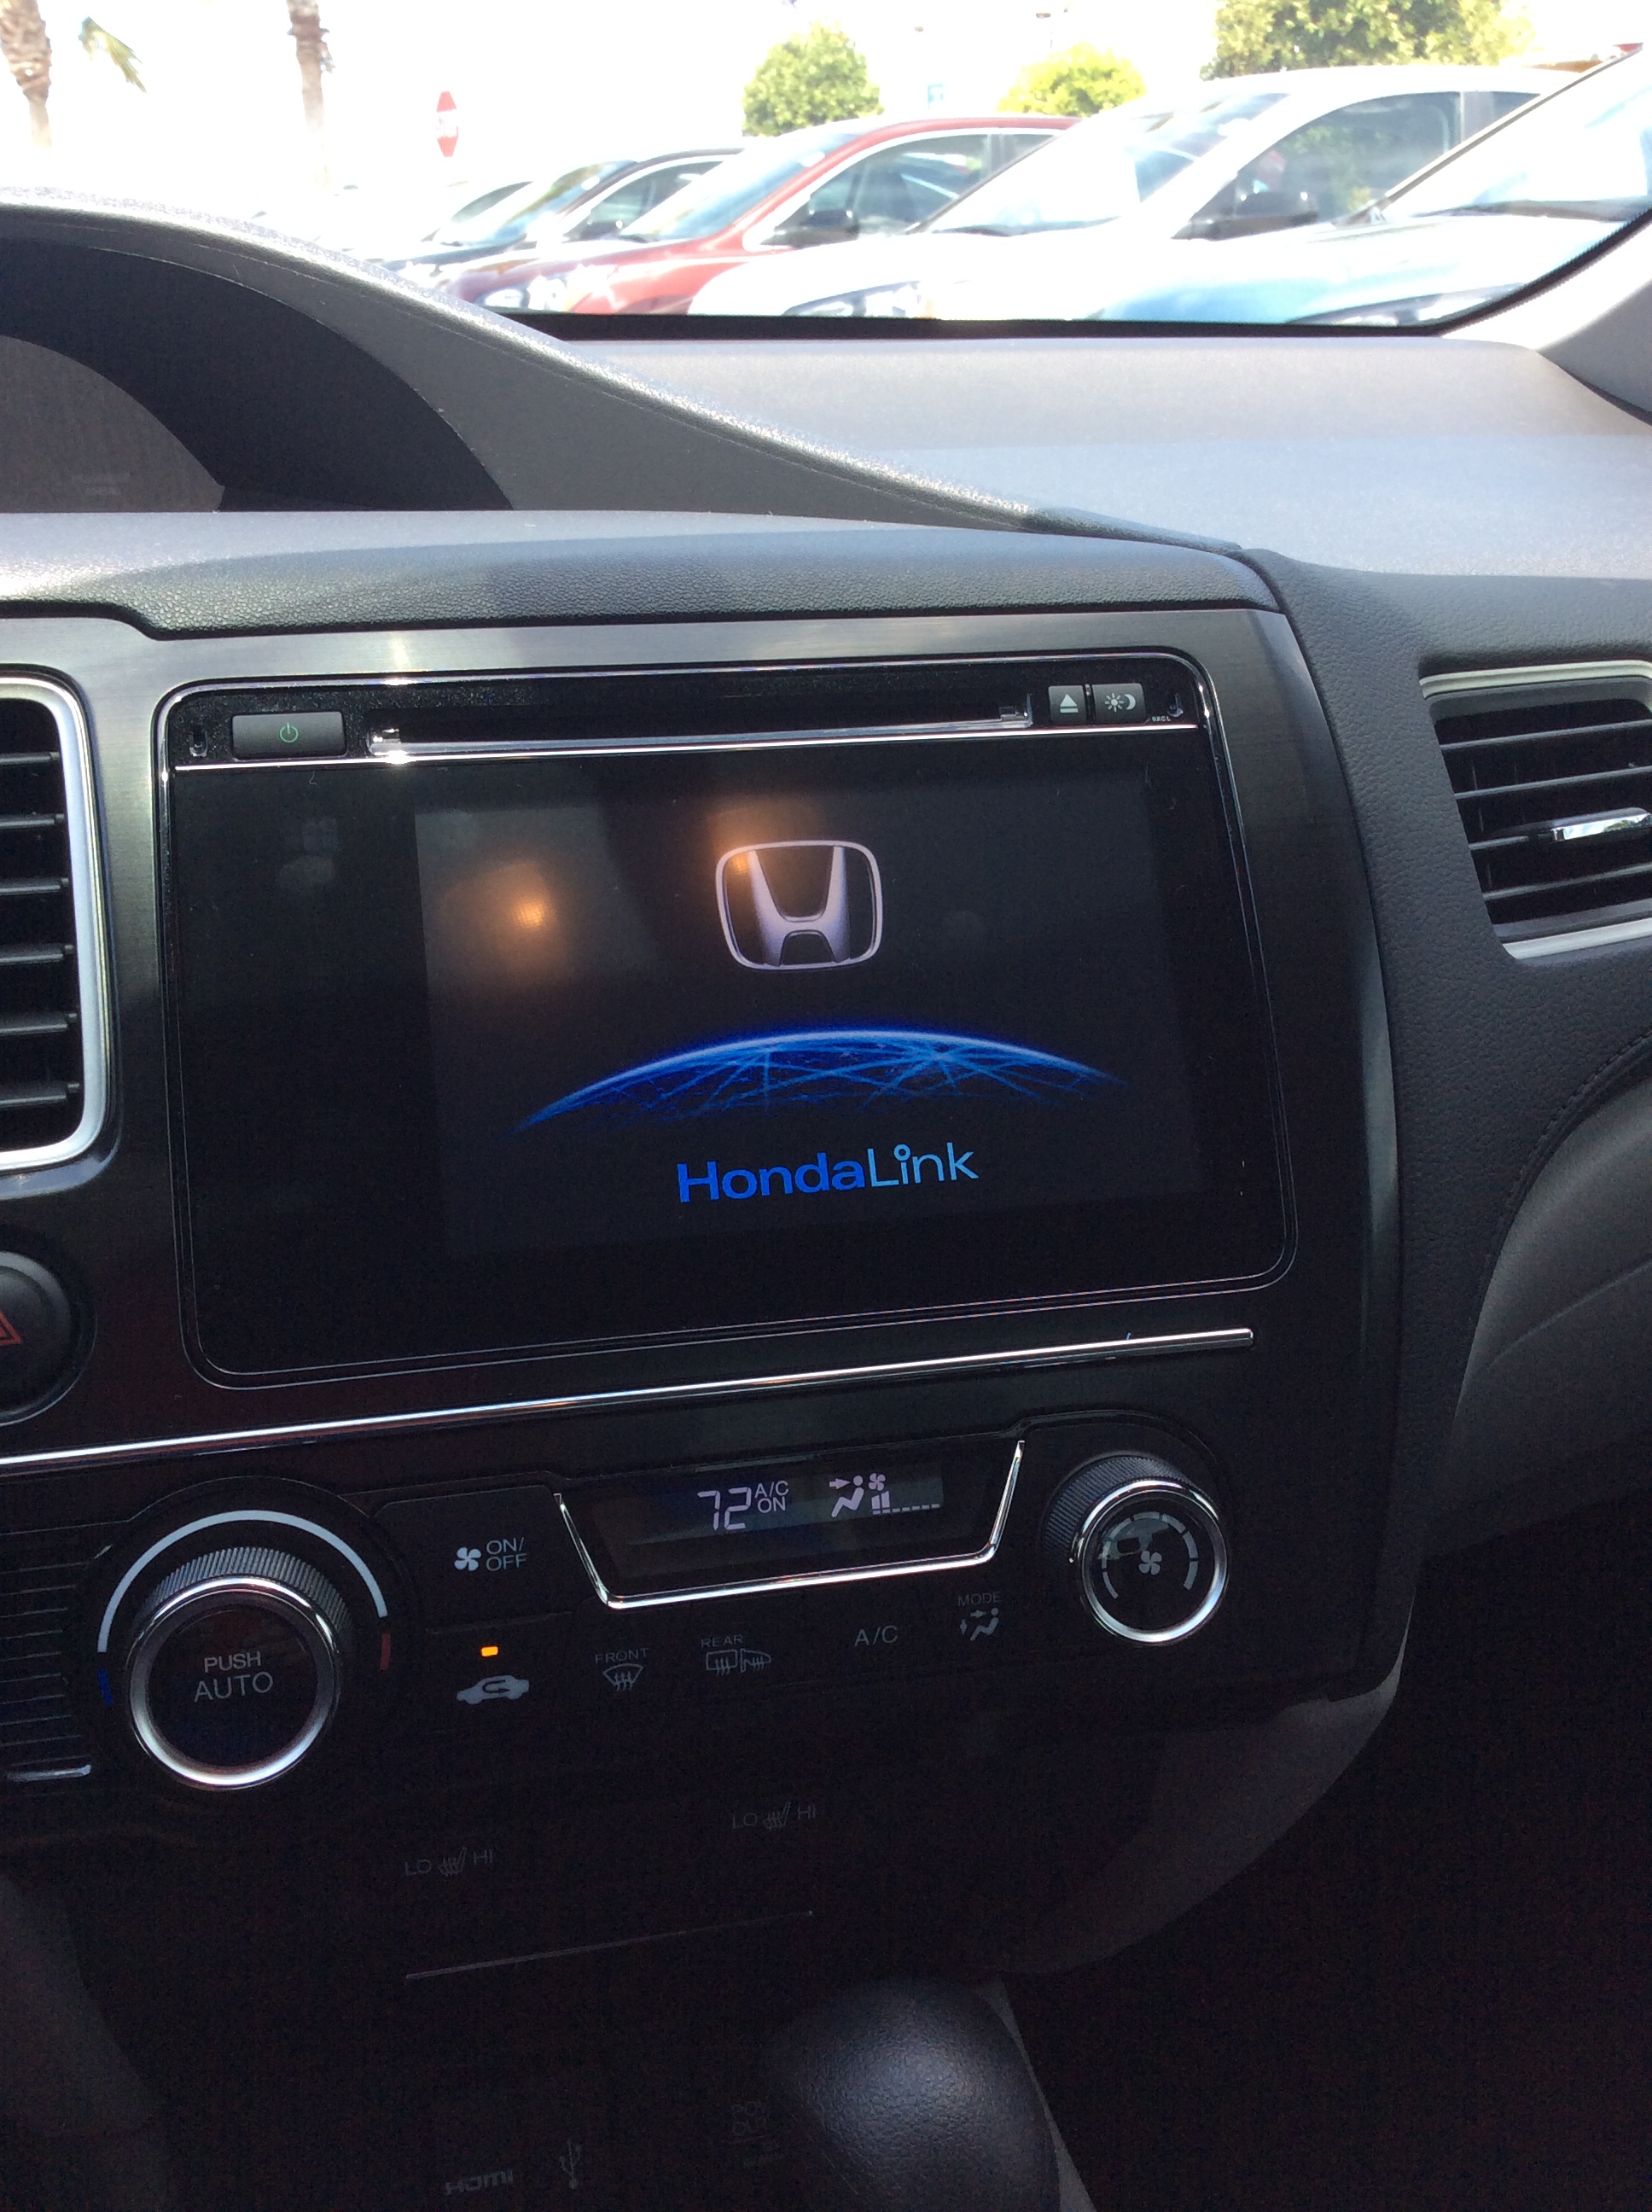 Honda crv usb interface